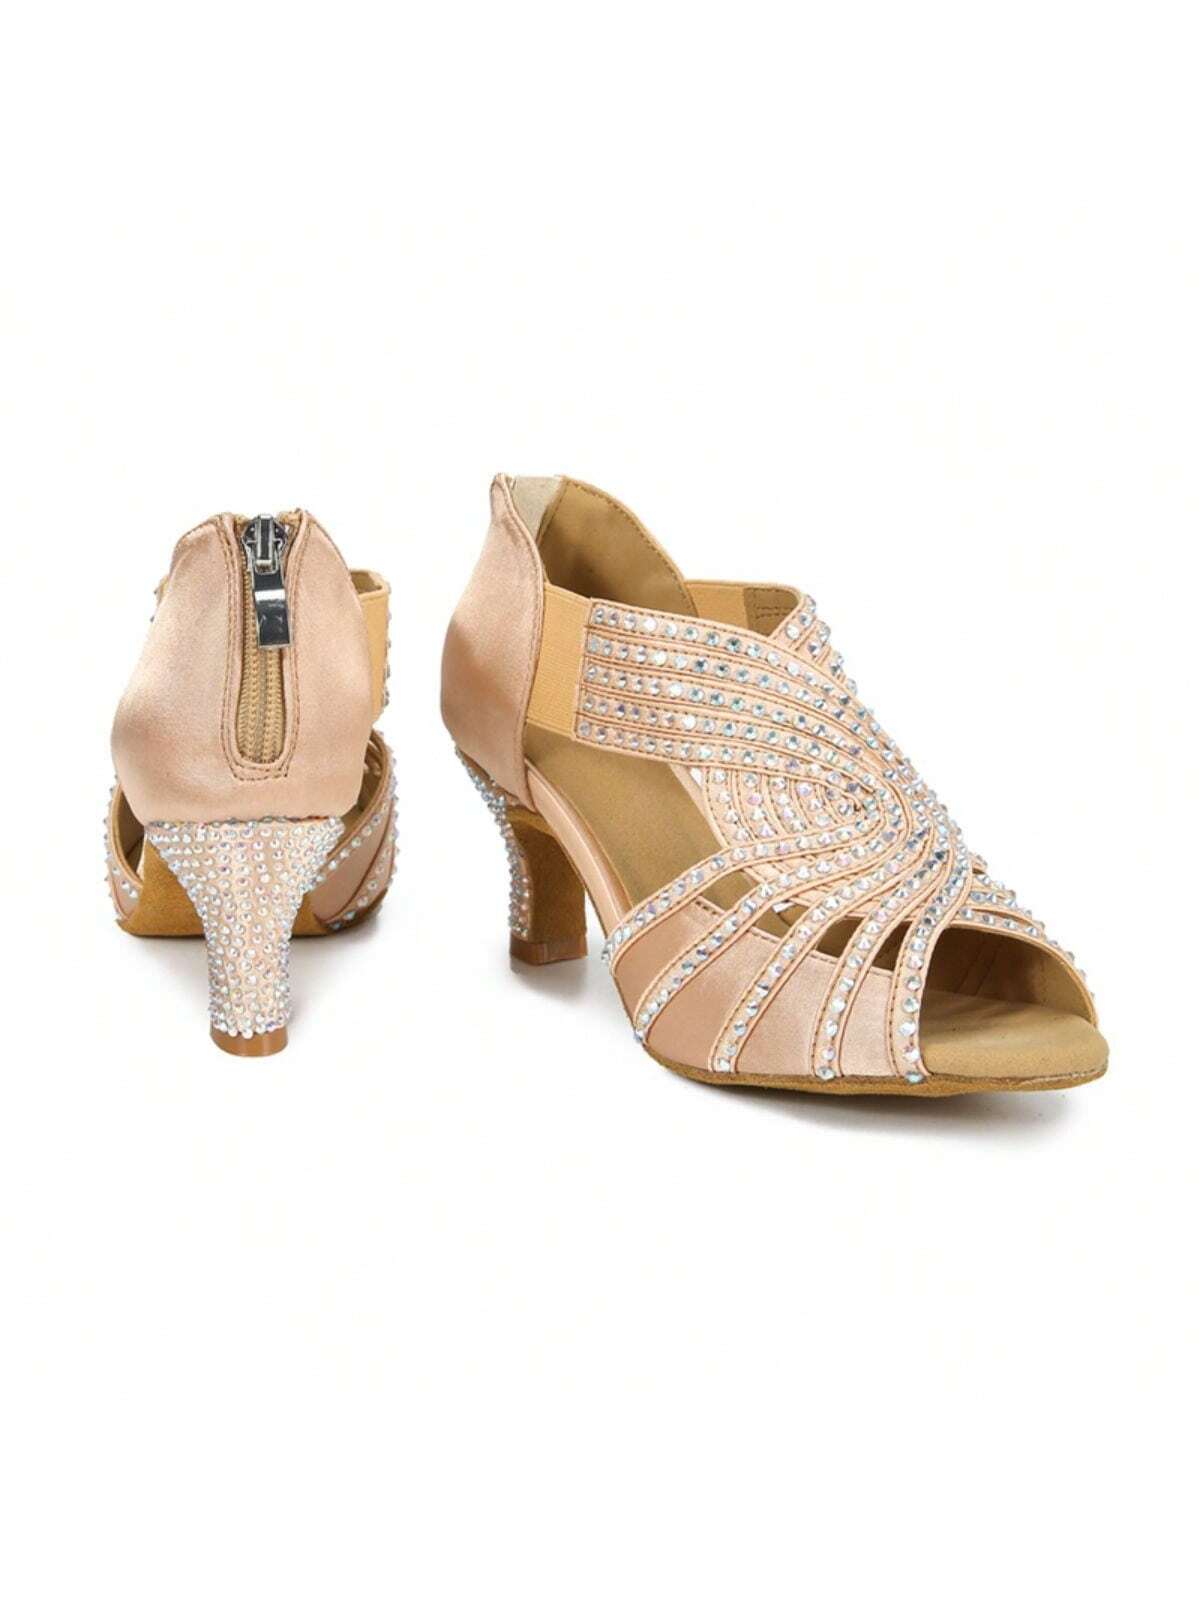 1 Pair Apricot Diamond-studded Satin Fashionable Comfortable Mid-heel Latin Dance Tango Dance Social Dance Shoes-Apricot-7